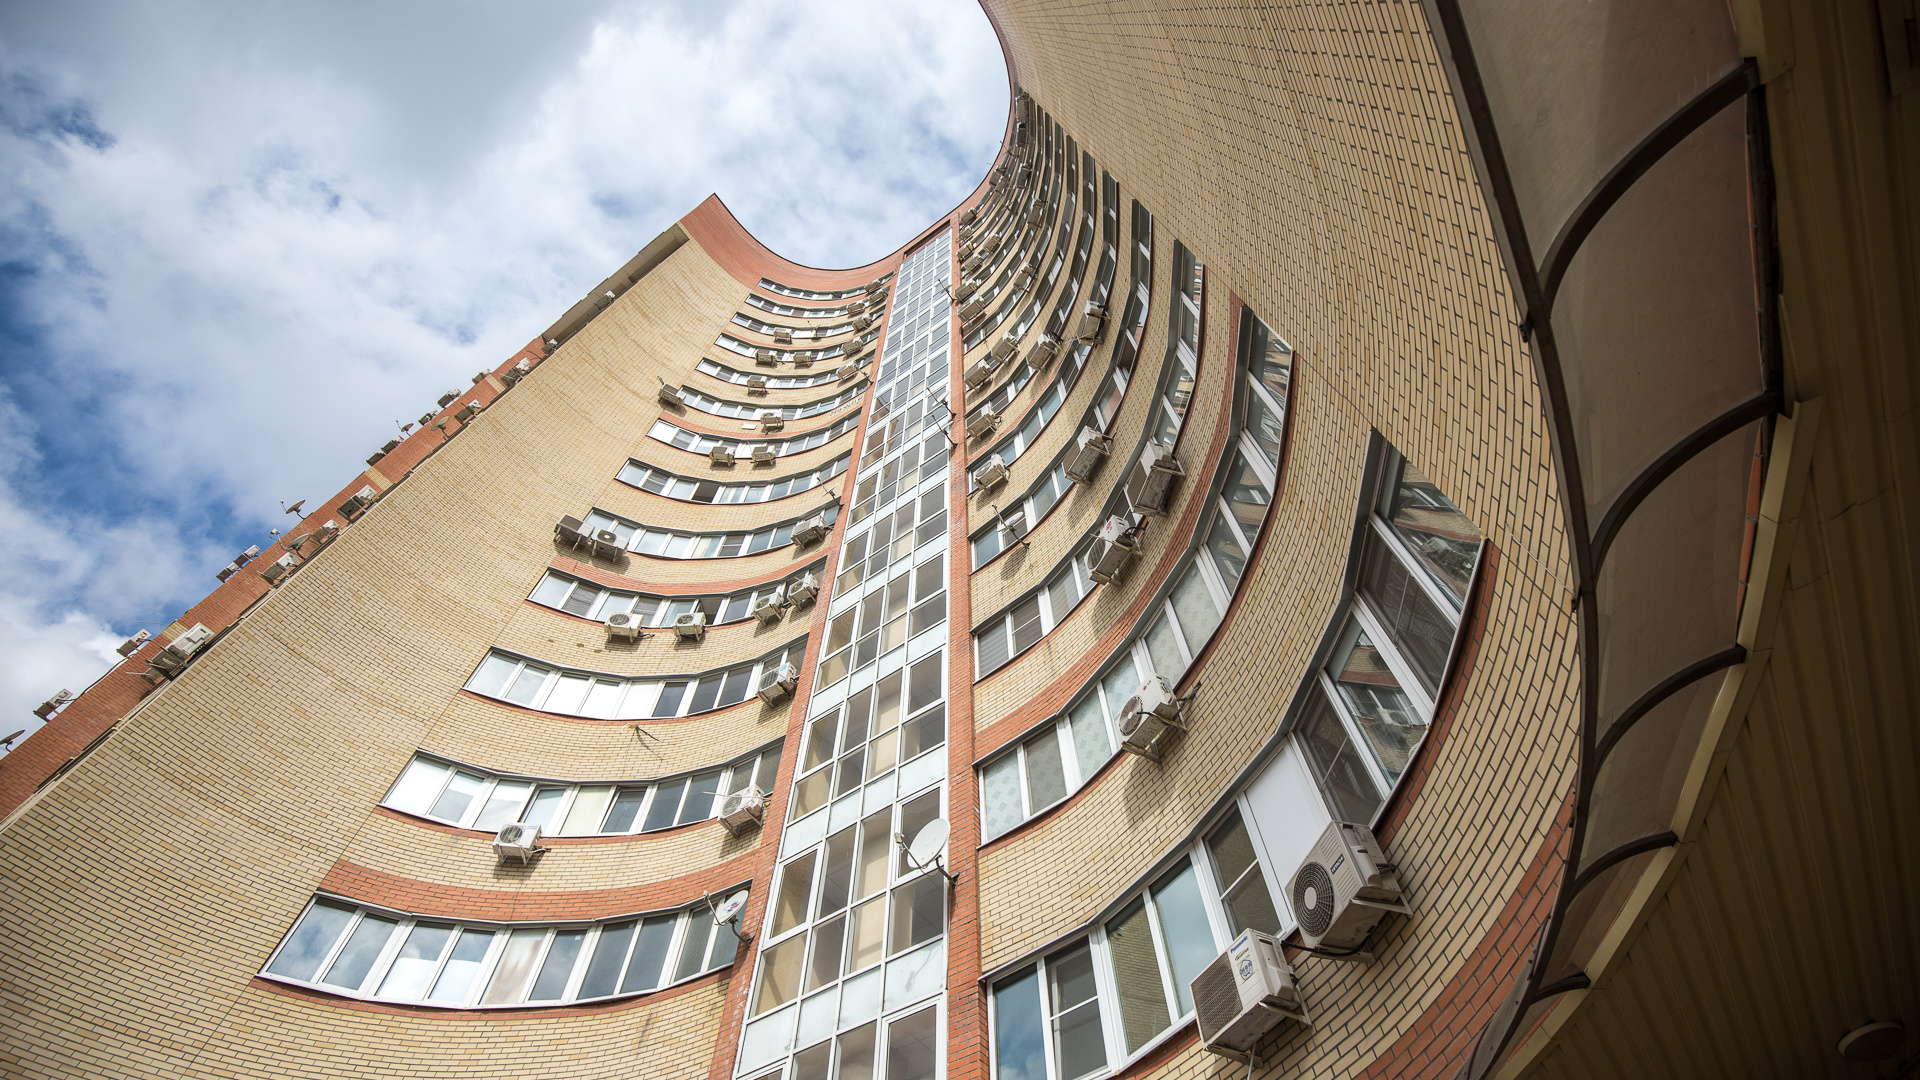 Как спецоперация влияет на рынок жилья Ростова и что будет с ценами на квартиры? Интервью